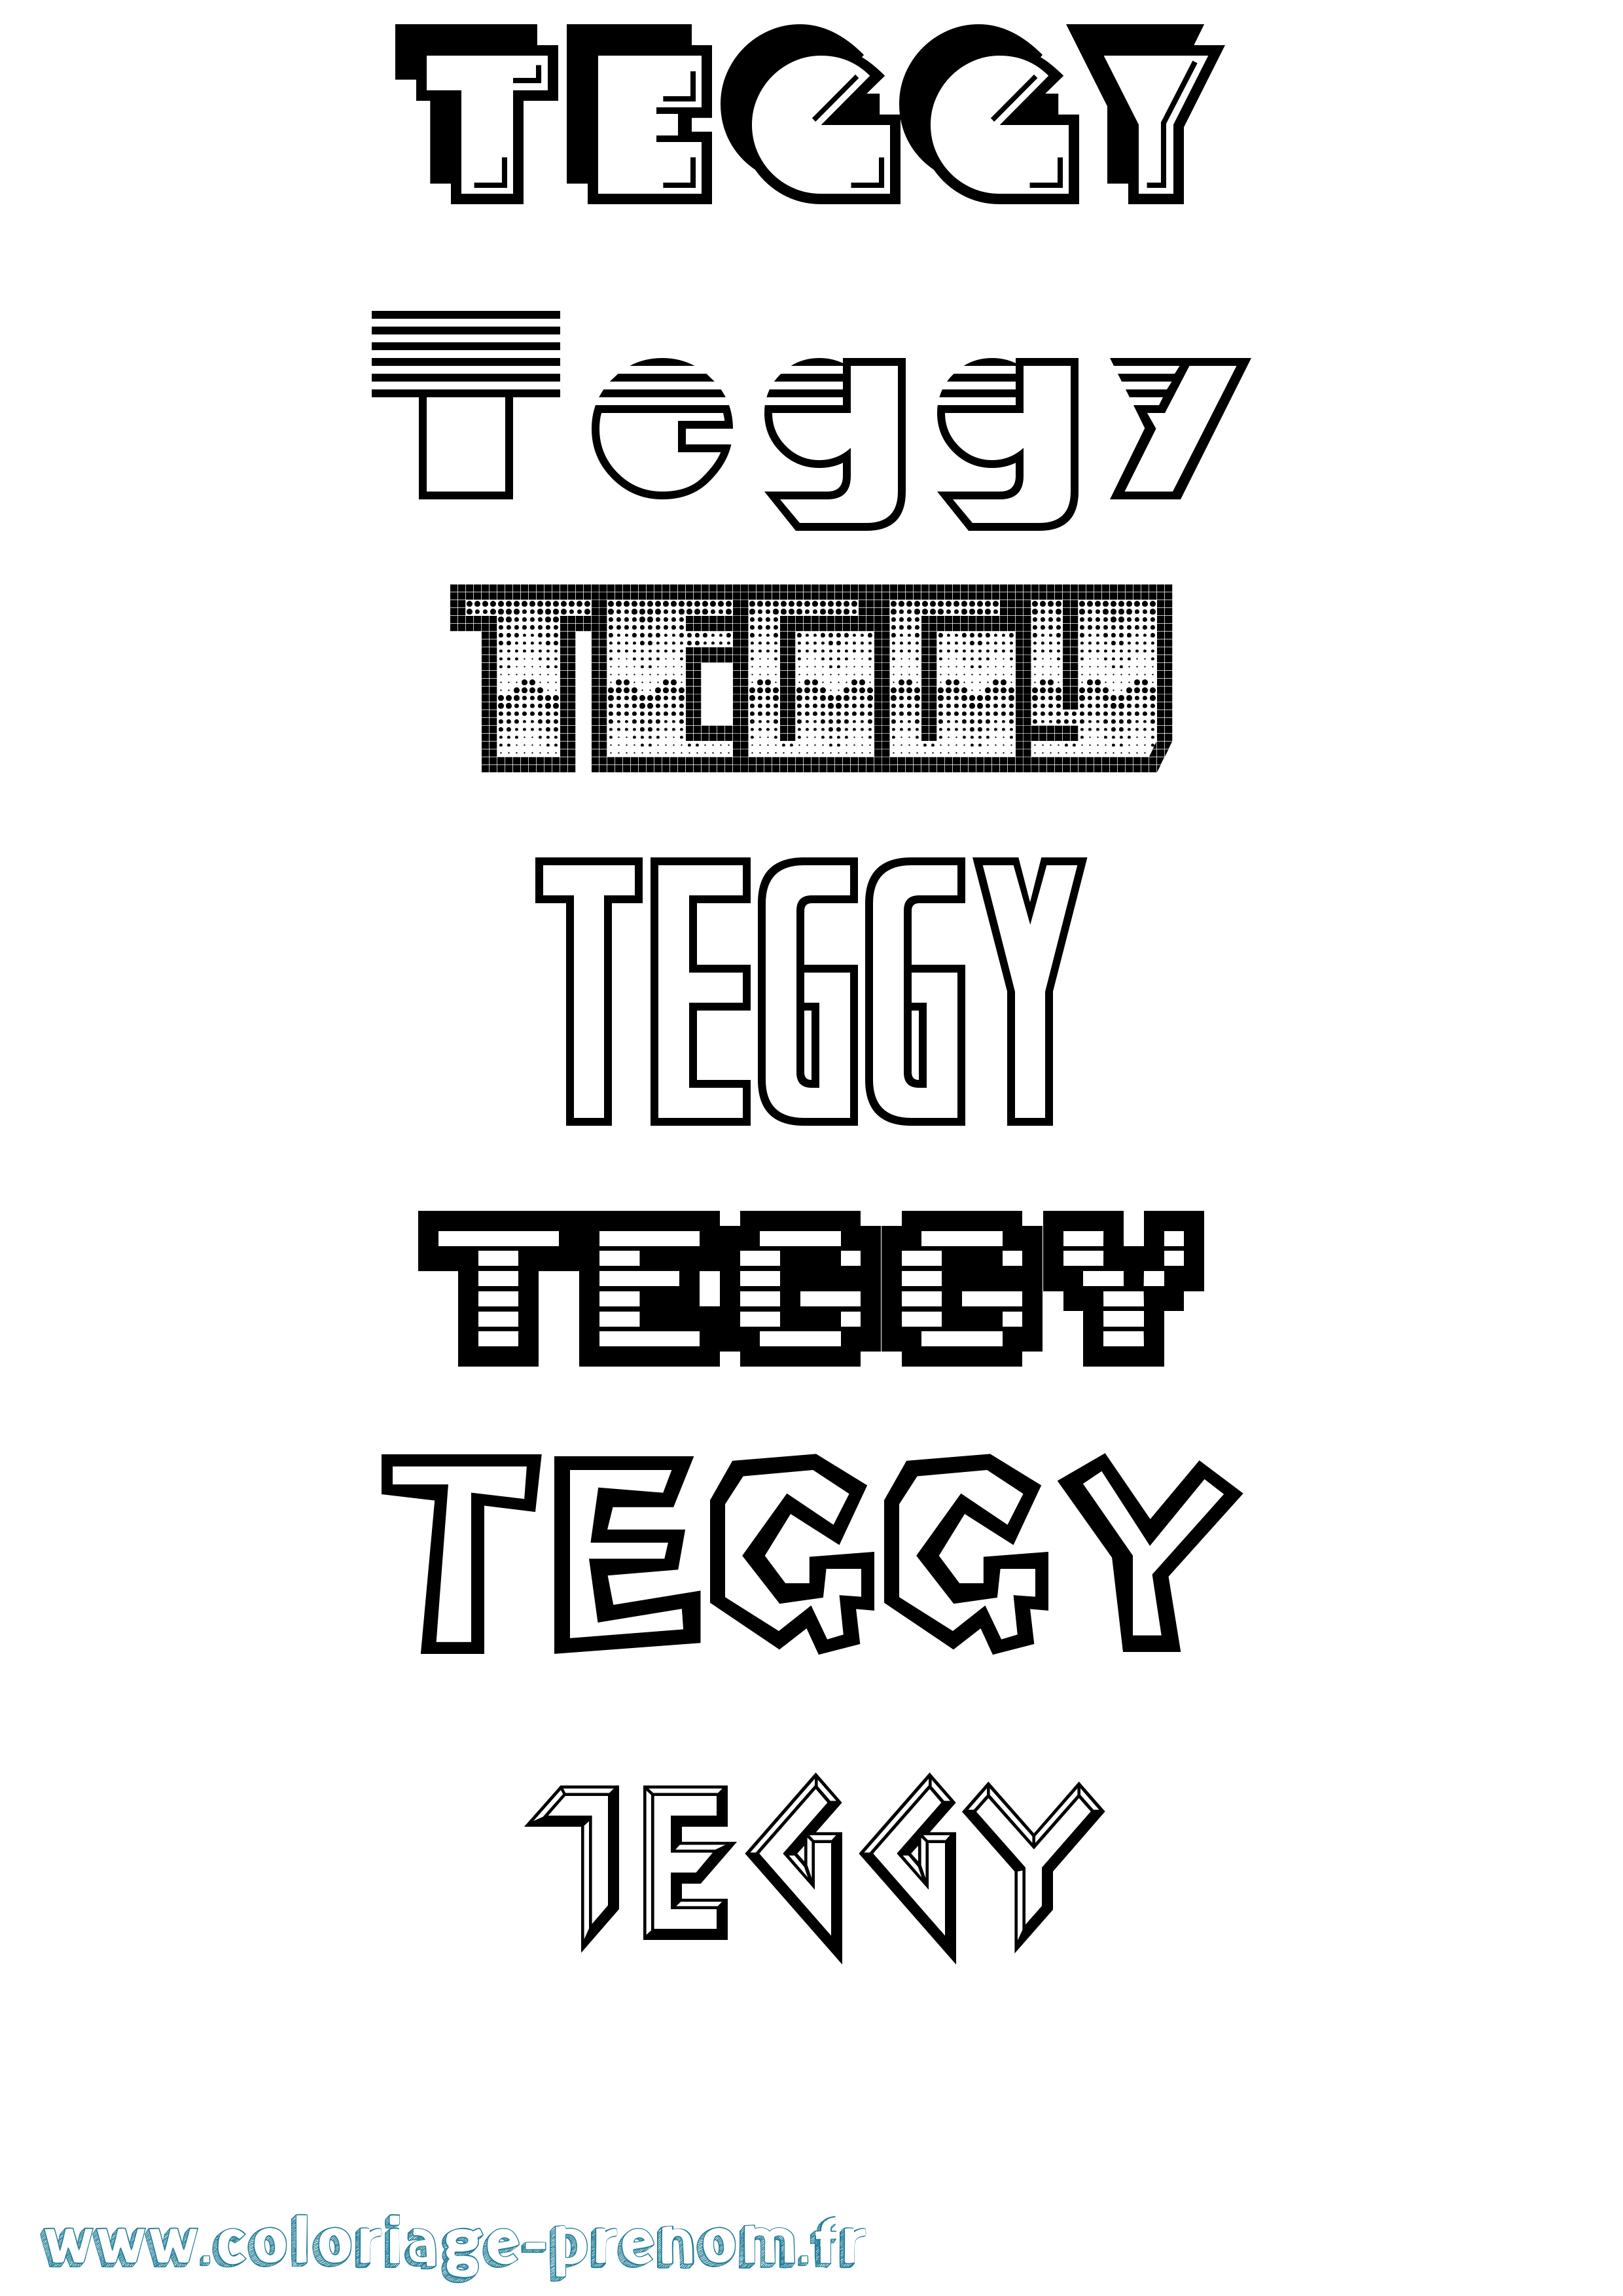 Coloriage prénom Teggy Jeux Vidéos